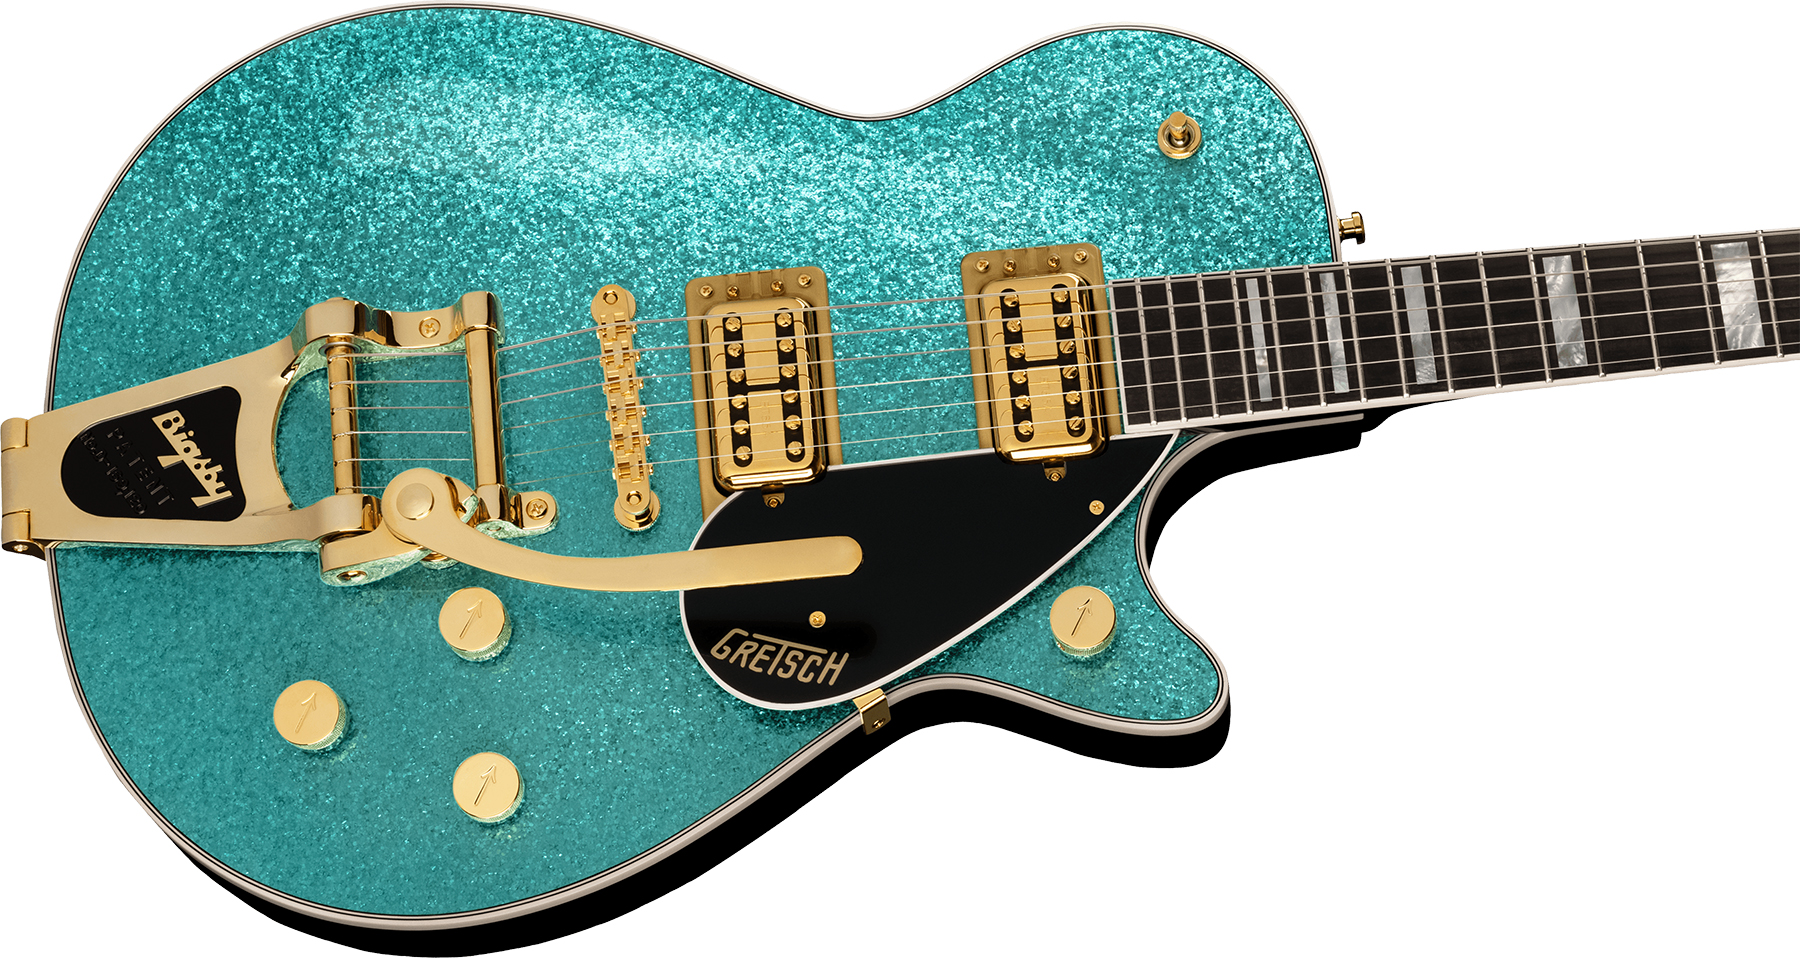 Gretsch G6229tg Jet Bt Players Edition Pro Jap 2h Trem Bigsby Rw - Ocean Turquoise Sparkle - Guitarra eléctrica de corte único. - Variation 2